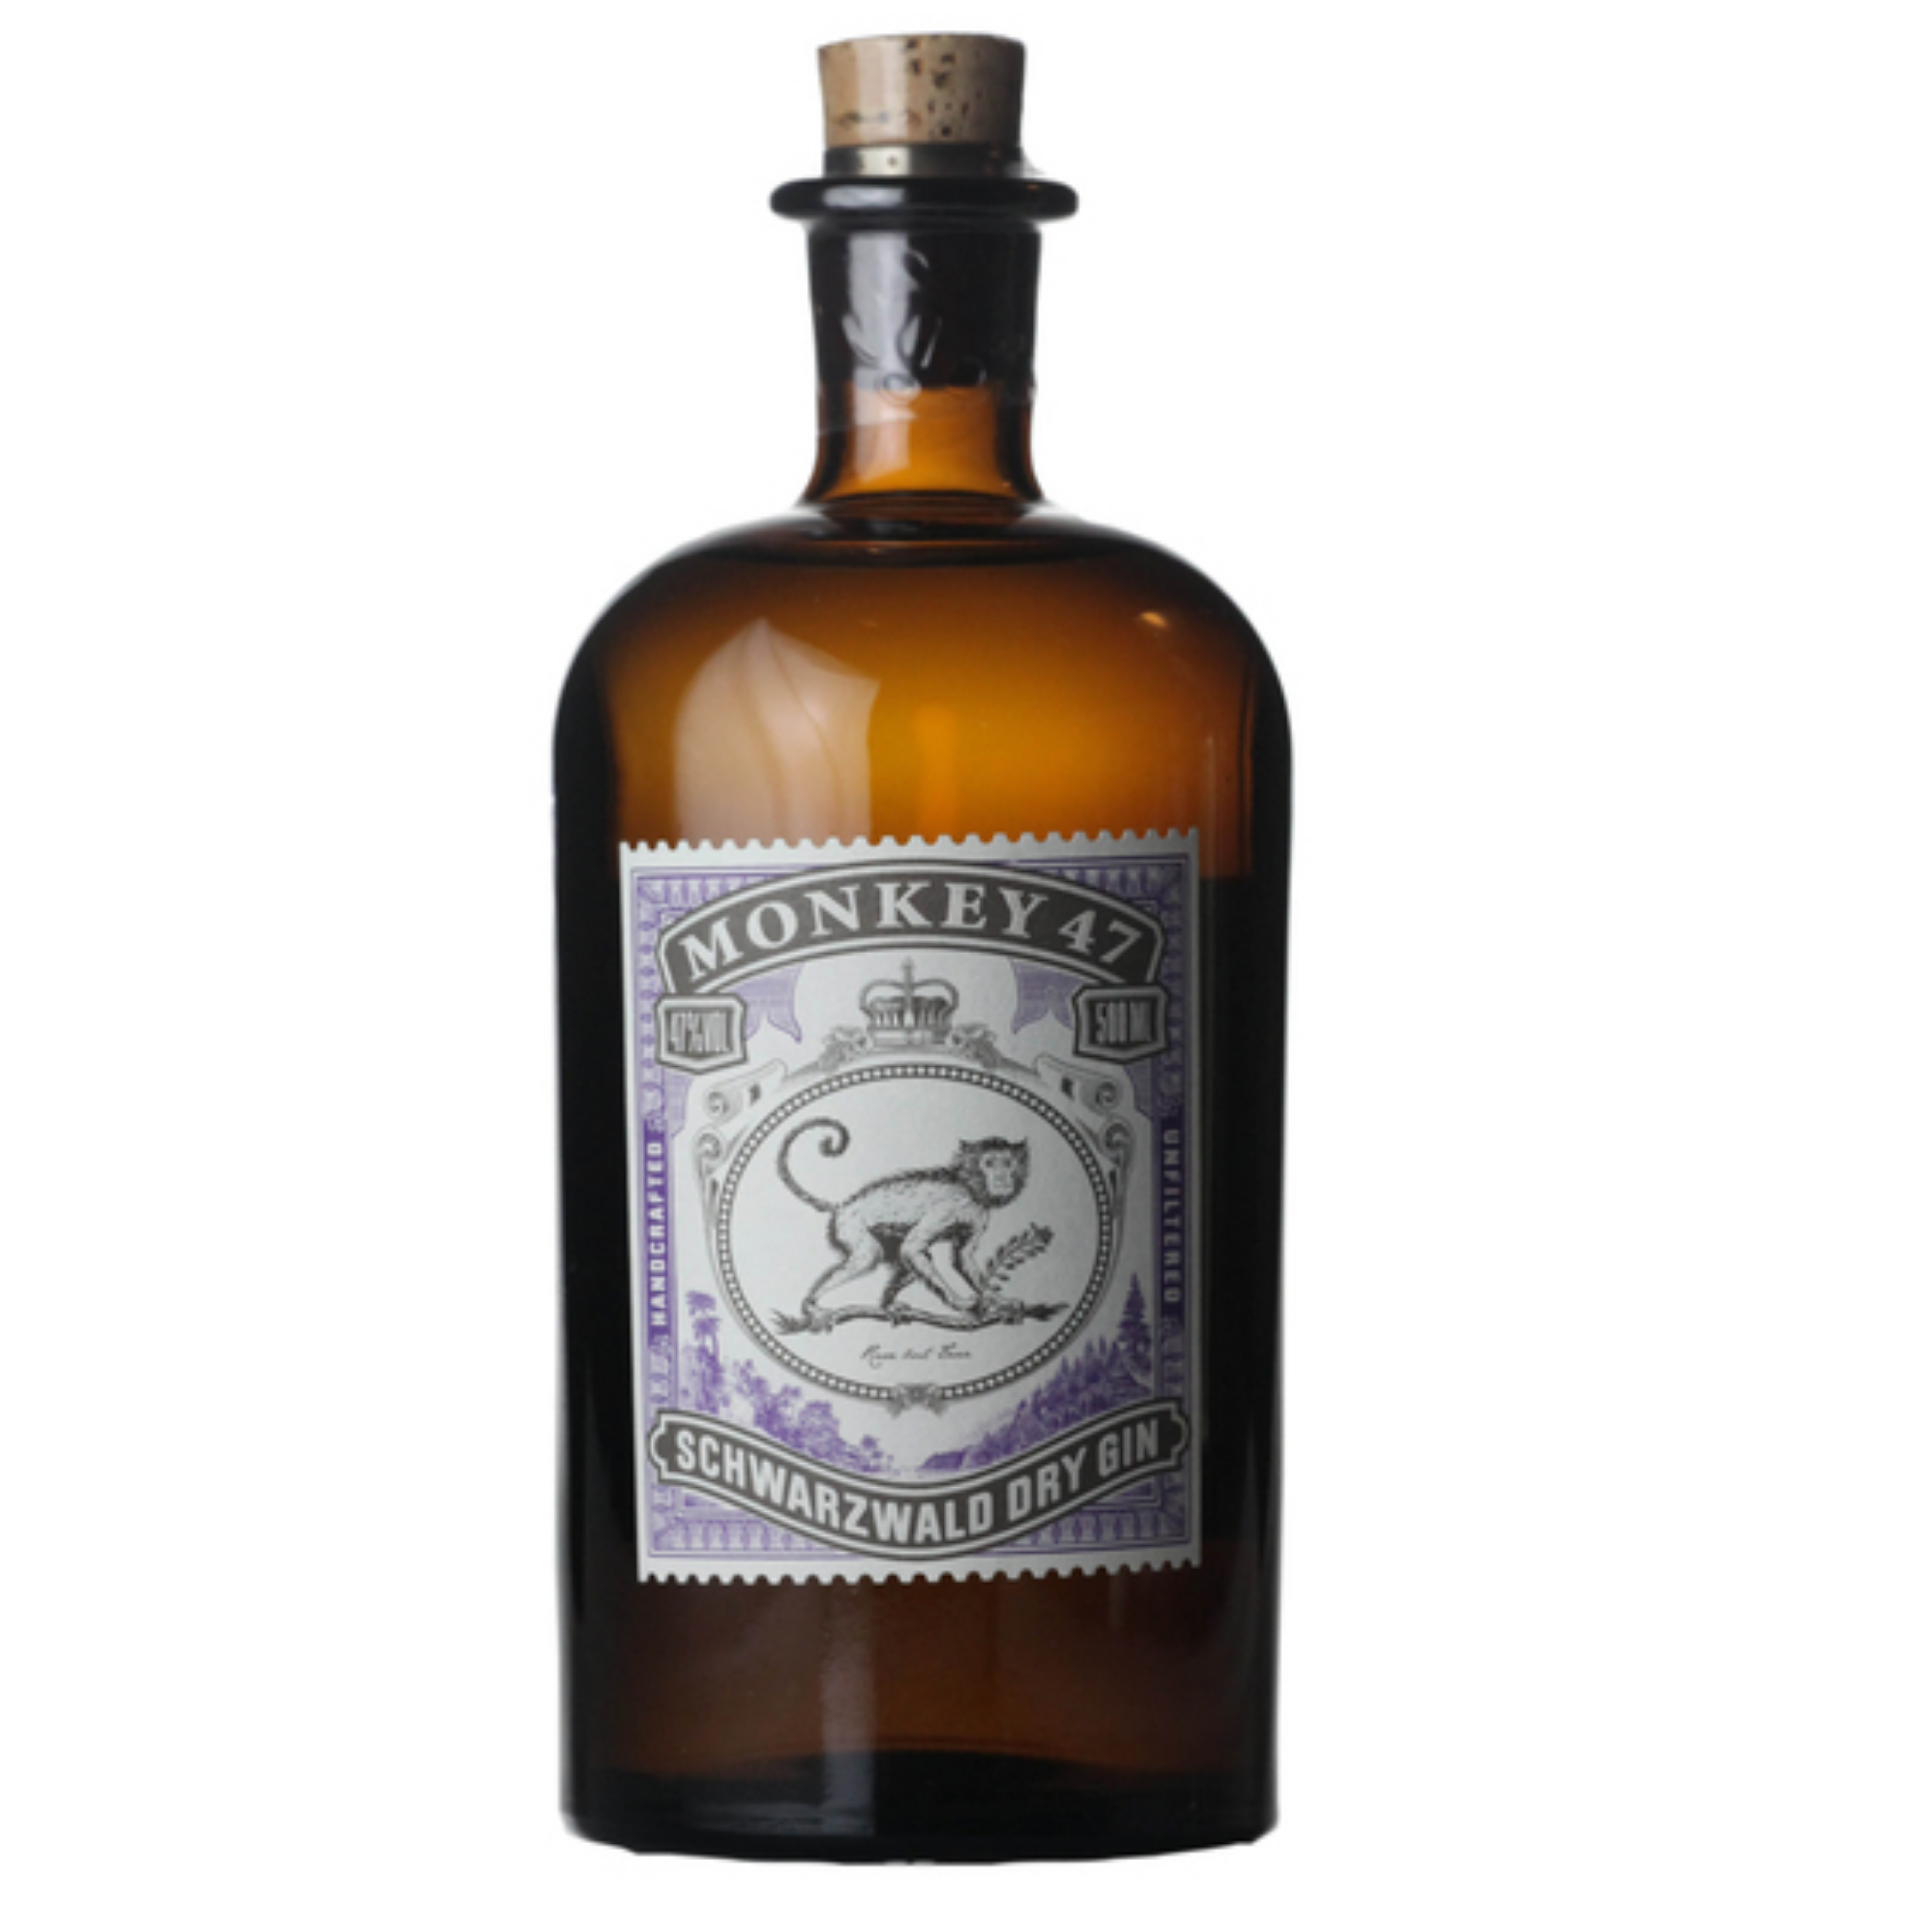 Buy Monkey 47 Gin 500ml Online in Singapore - Best Price – Oak & Barrel